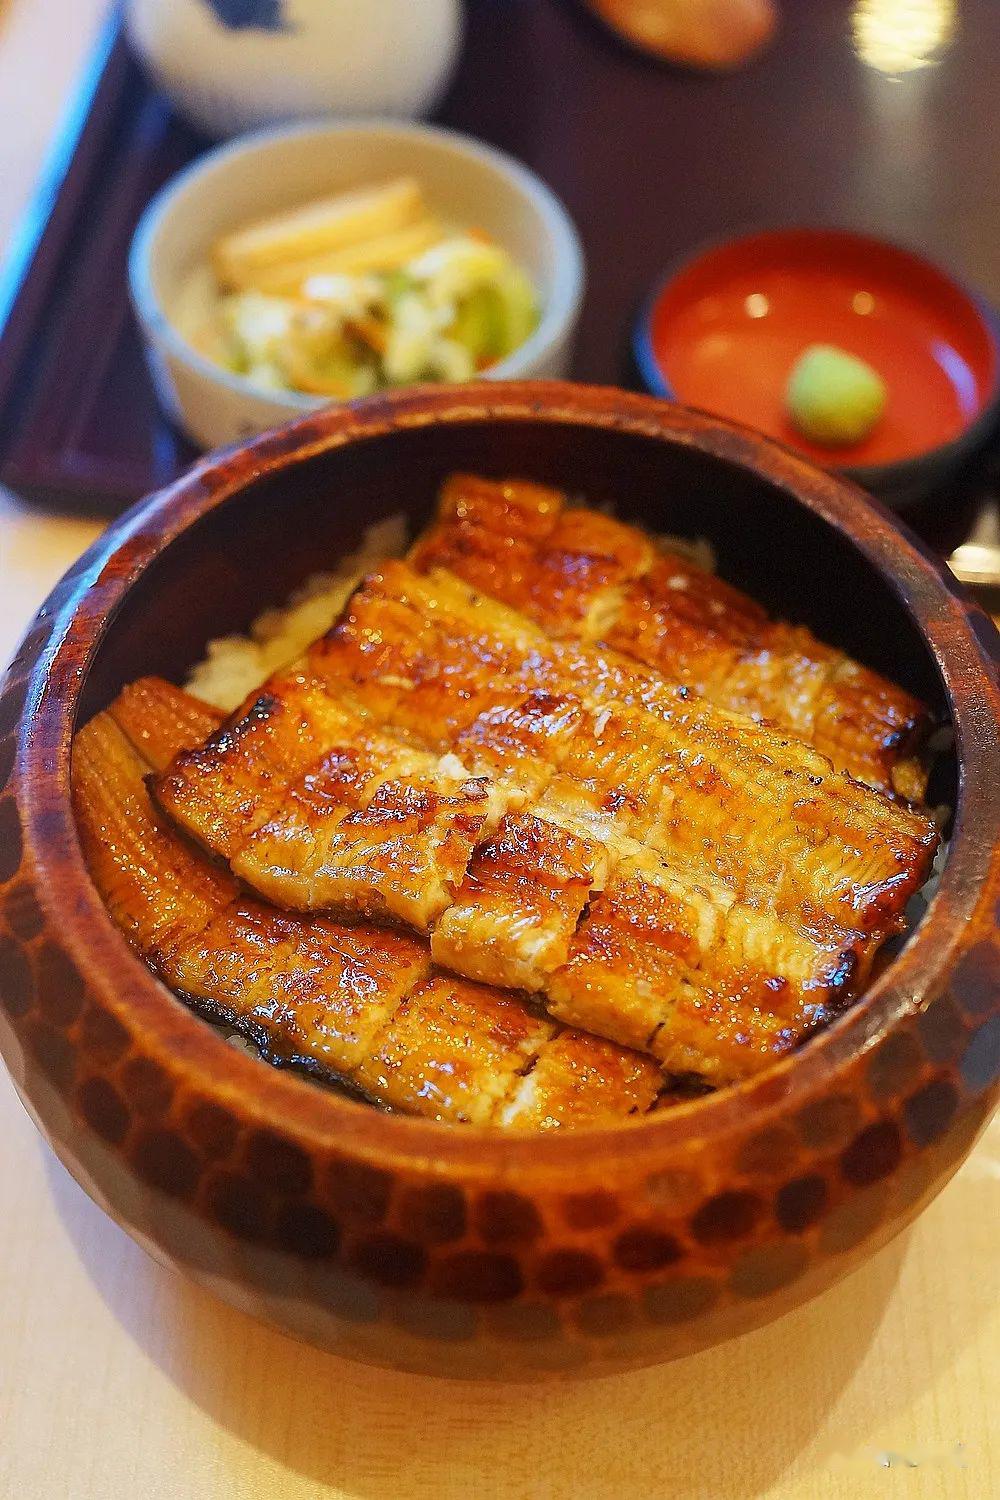 还是在日本玩的时候慕名去吃的一家鳗鱼饭味道不错,价格很贵寿司!